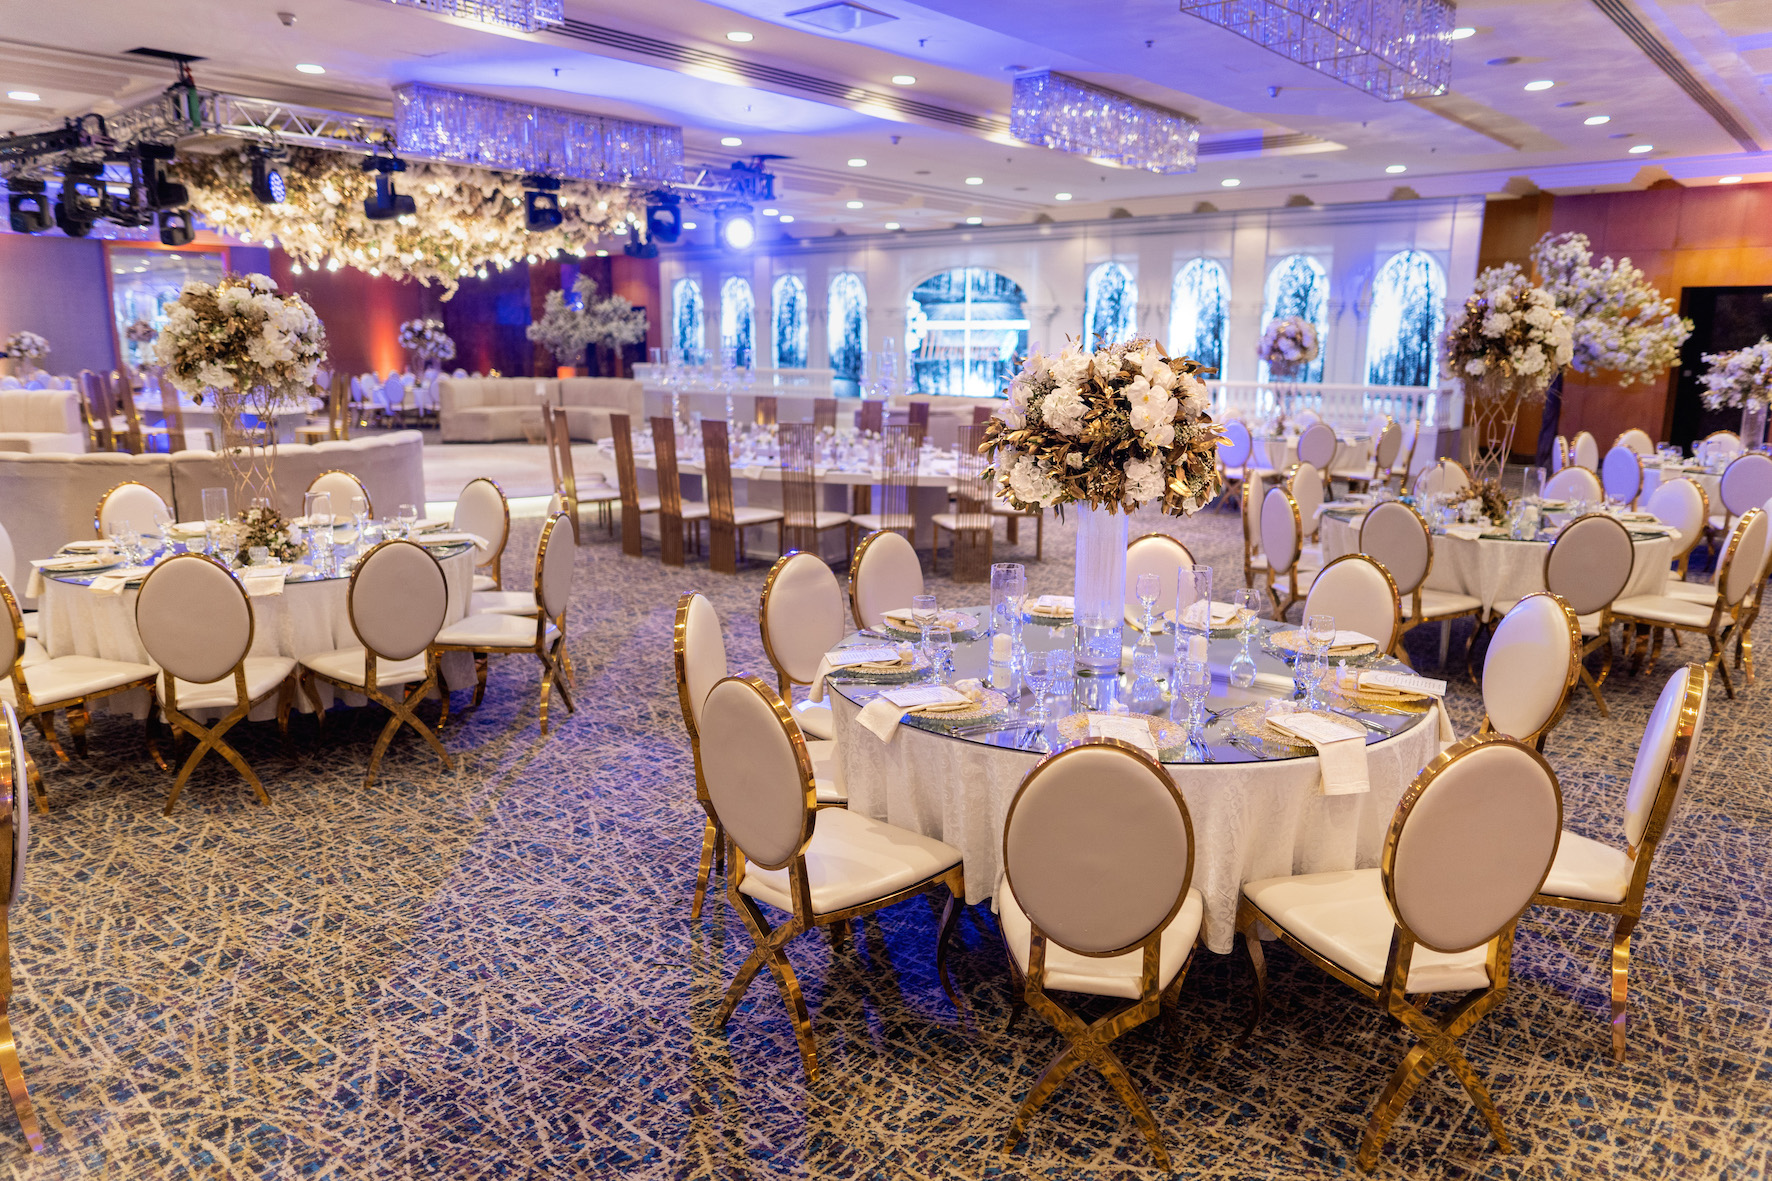 حزمة الزفاف من فندق شيراتون عمان النبيل